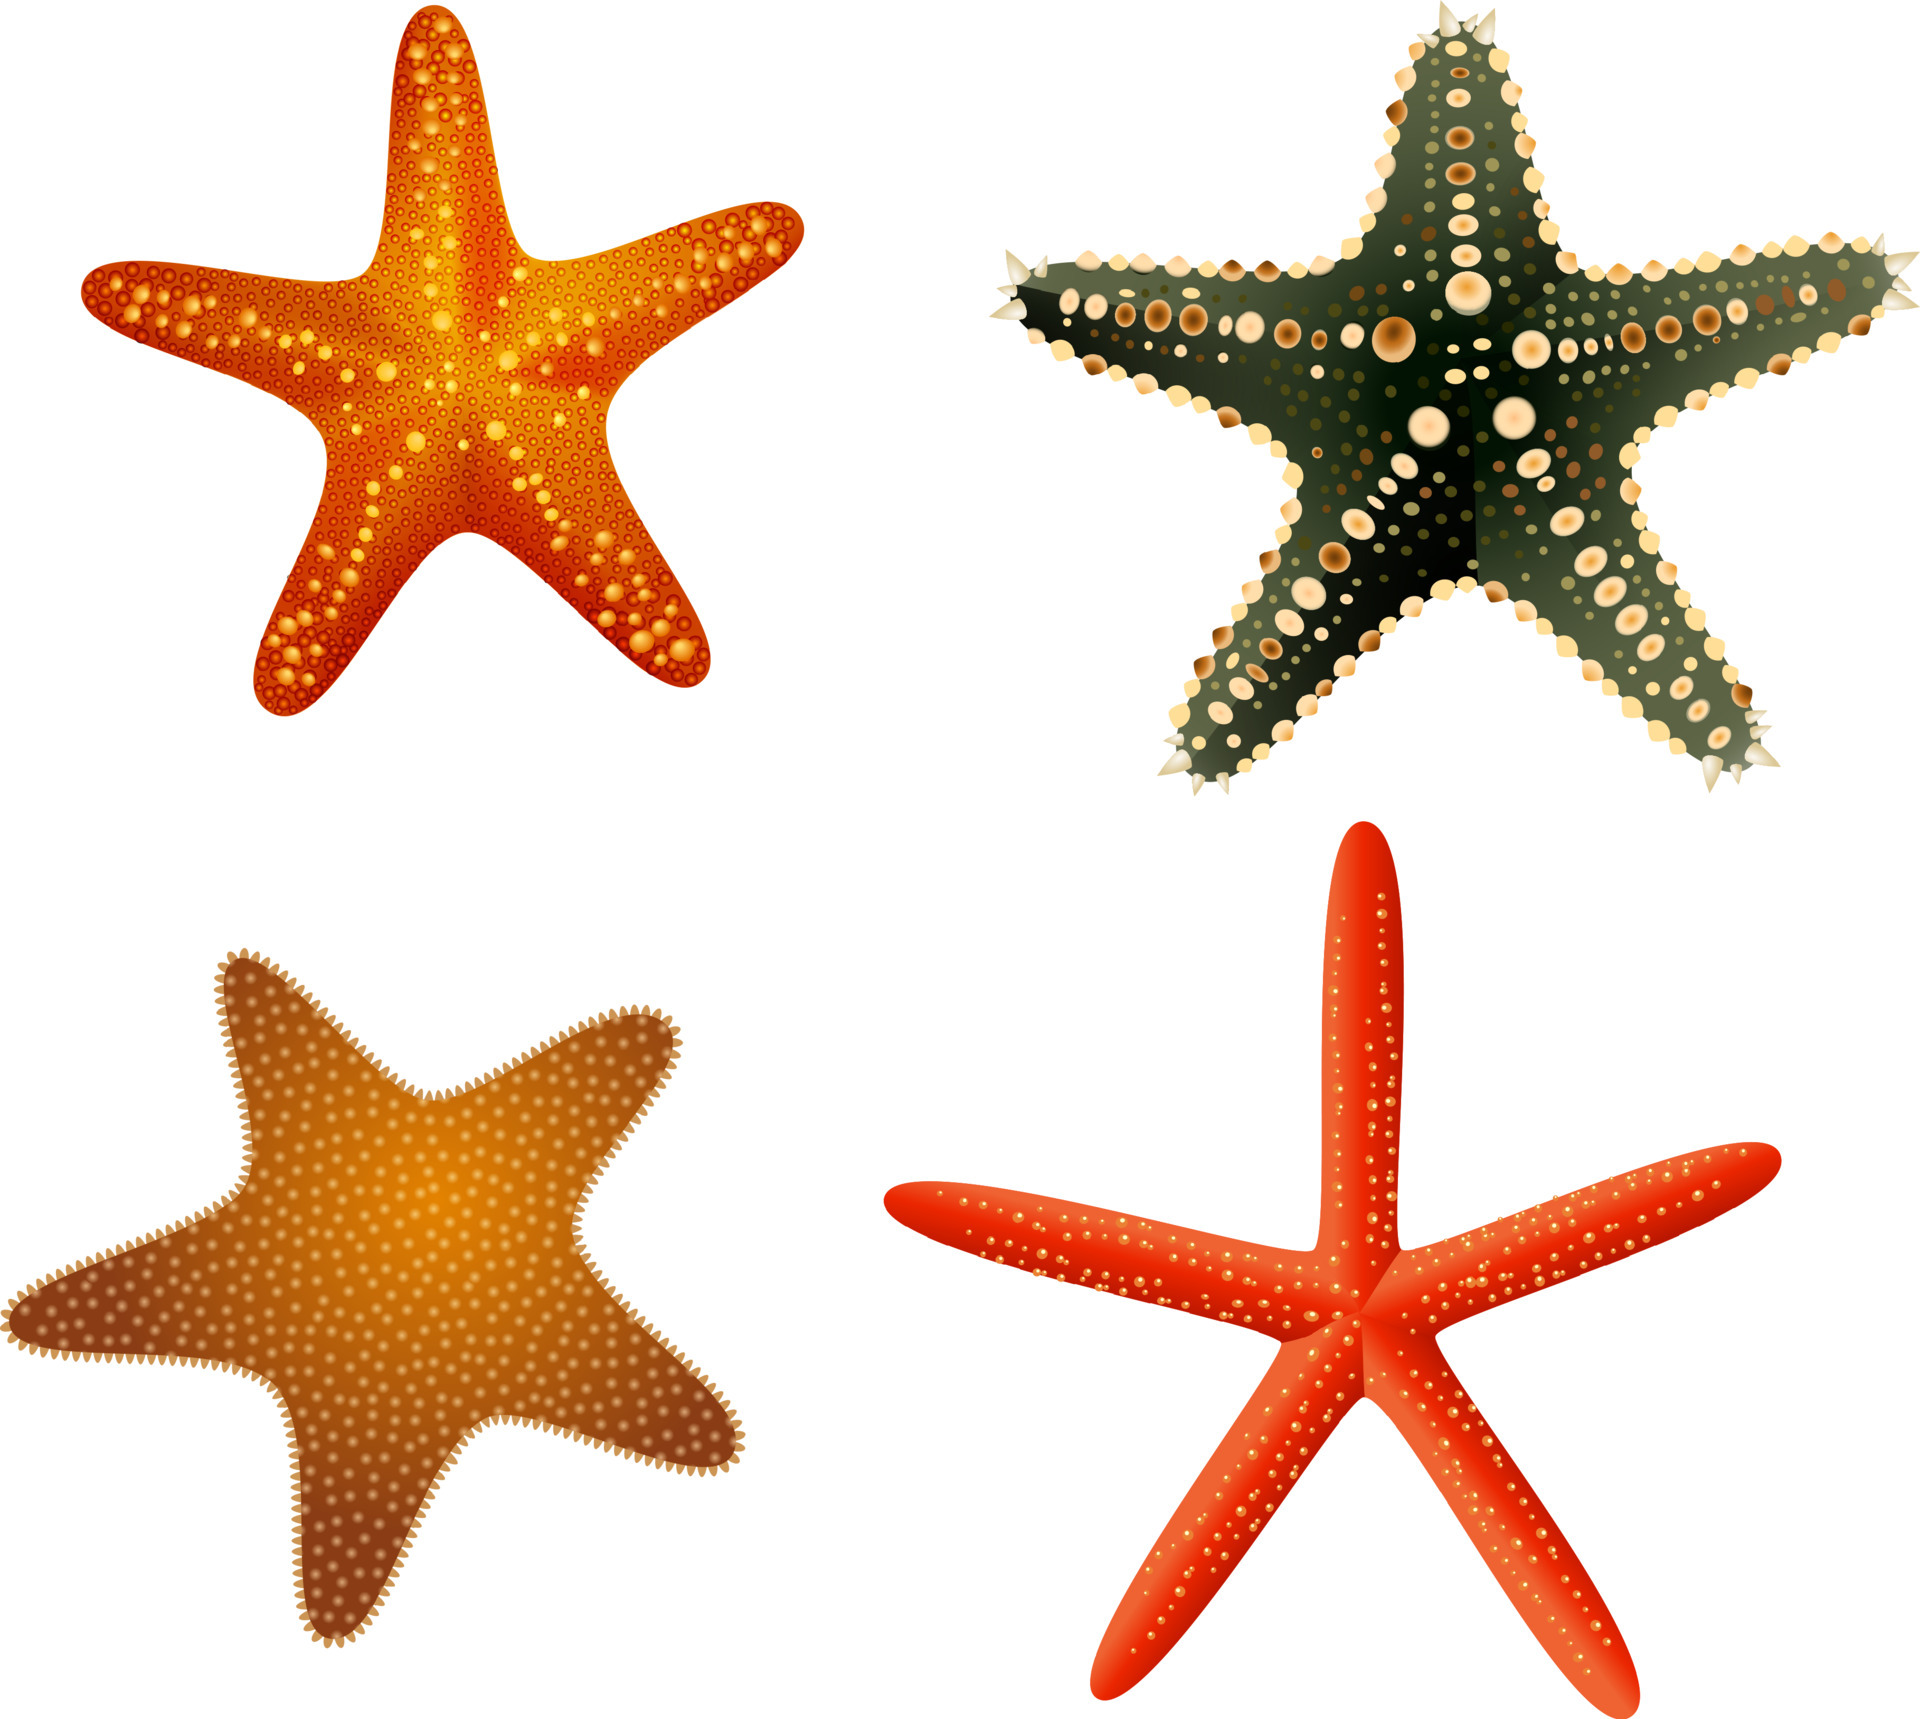 ocean starfish collection 5356937 Vector Art at Vecteezy